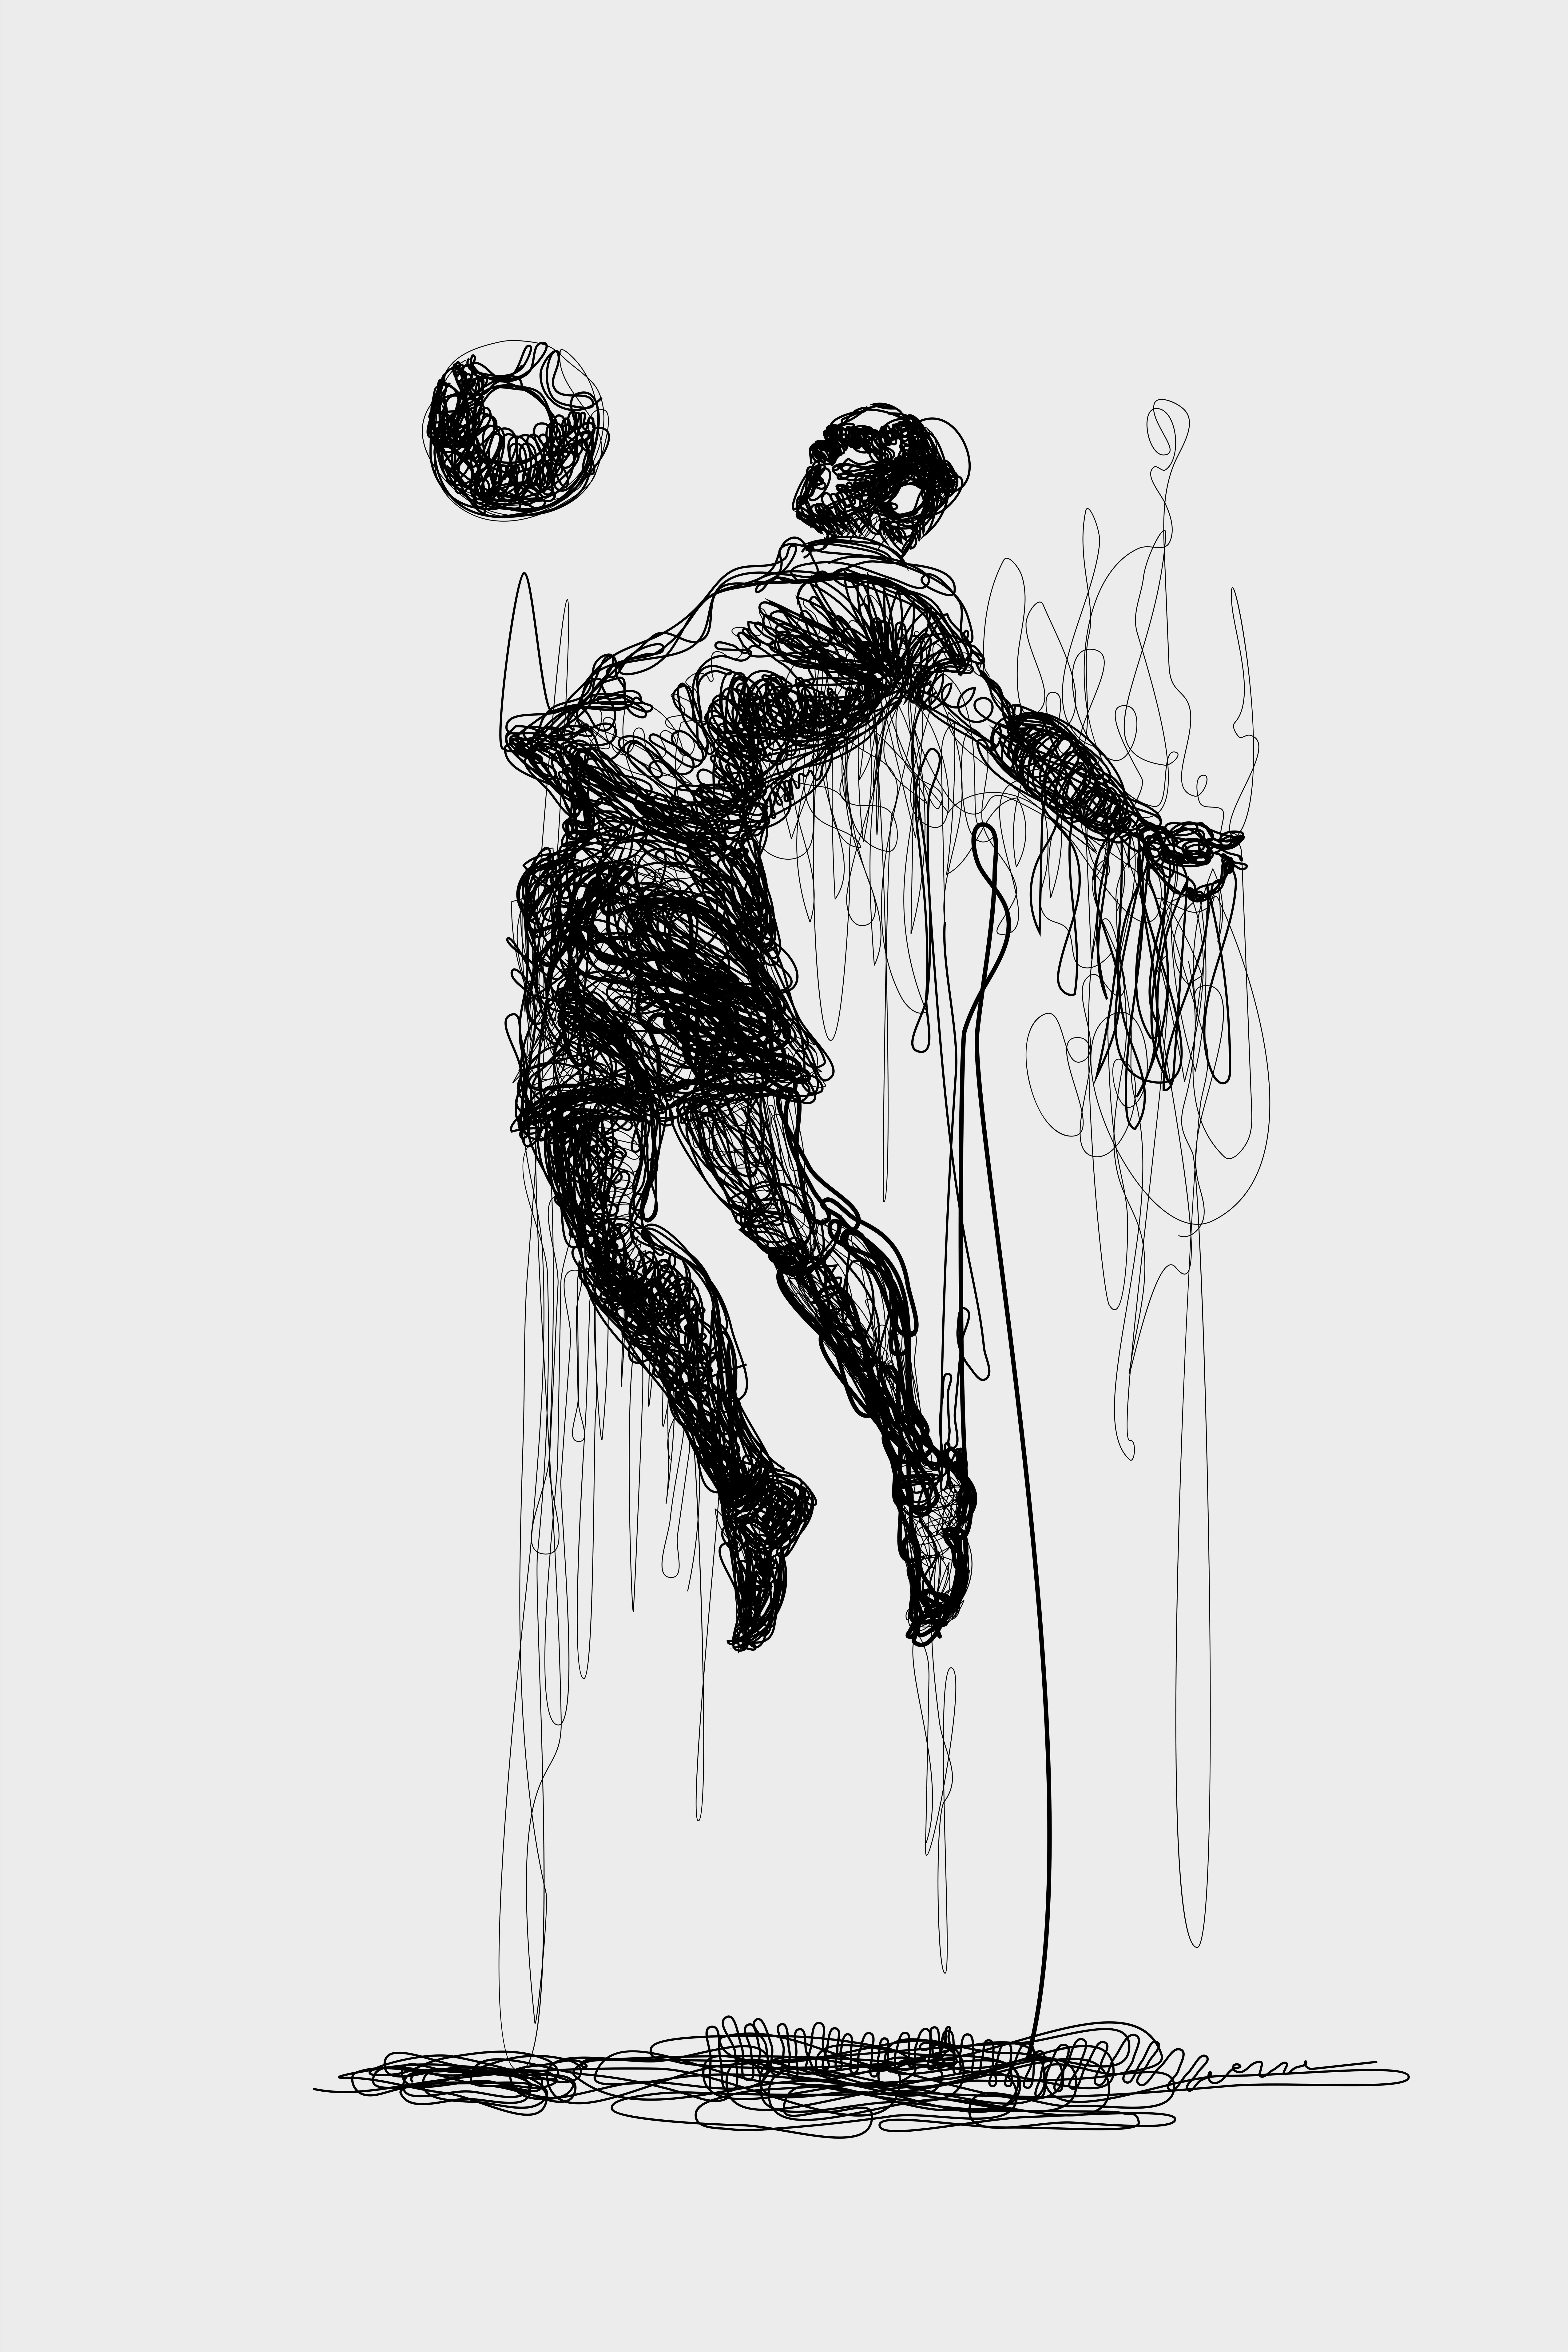 Soccer player sketch